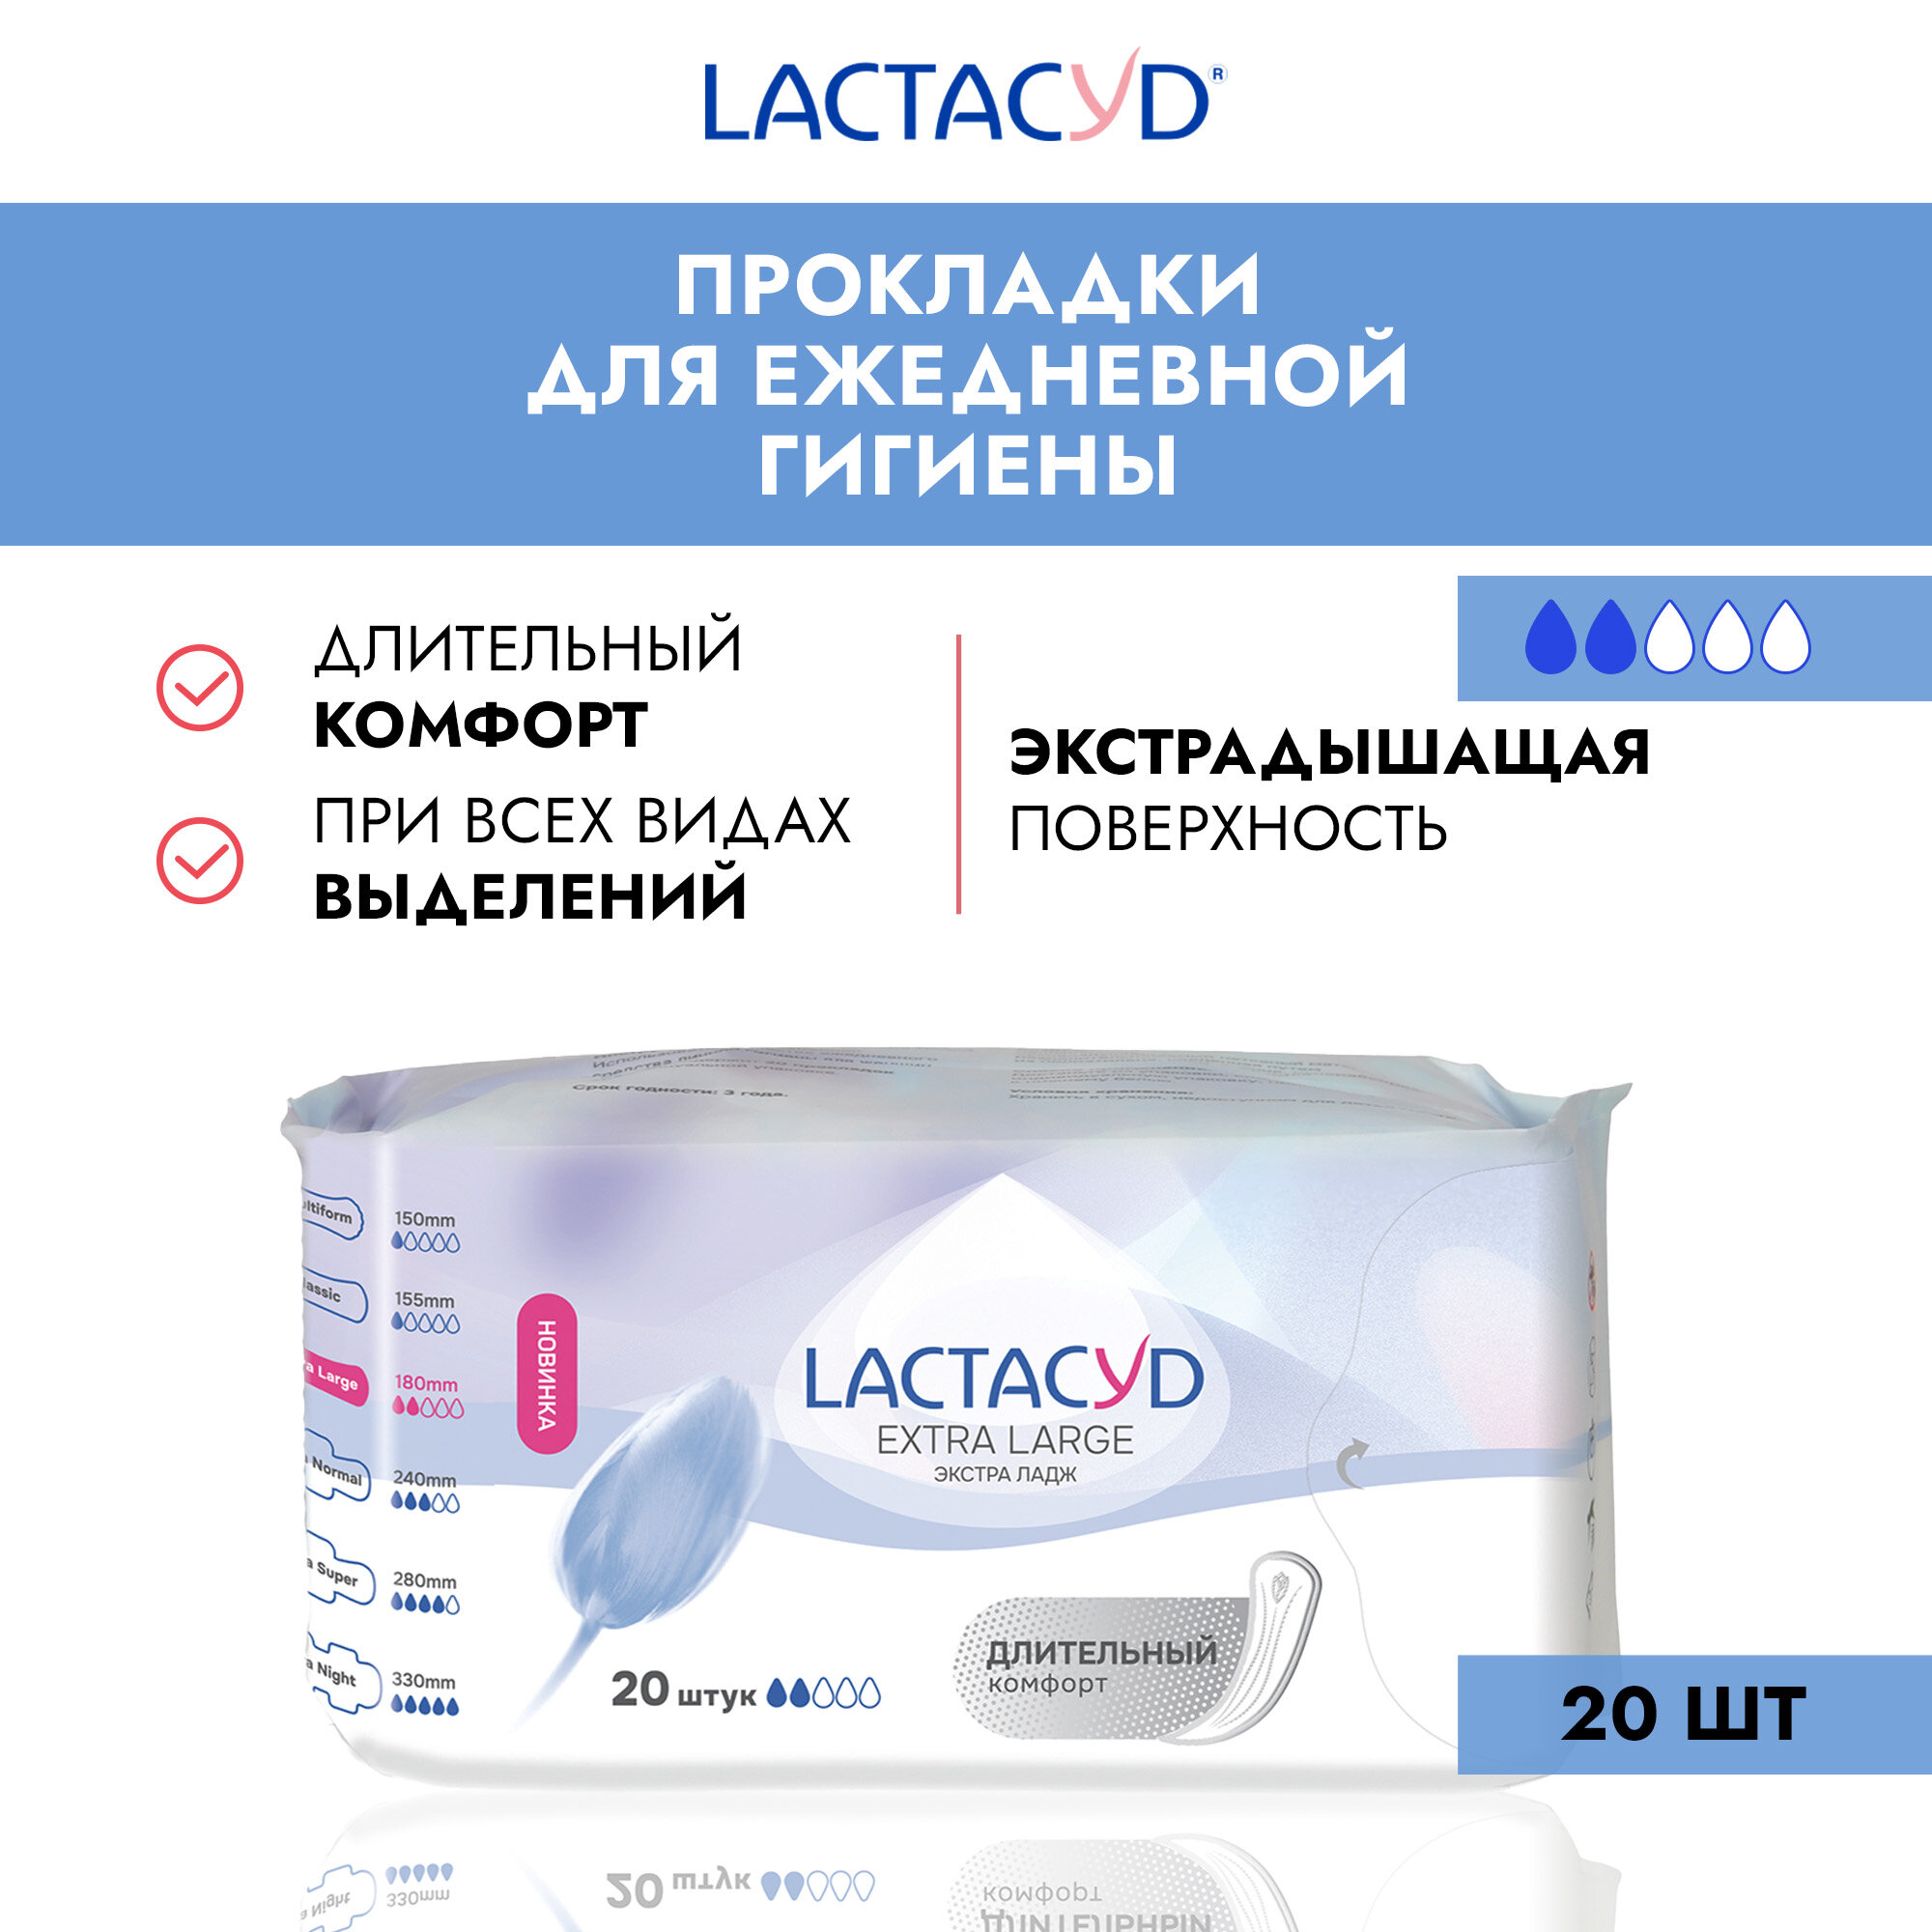 Lactacyd Прокладки женские впитывающие для ежедневного использования Extra Large (Normal) 20 шт